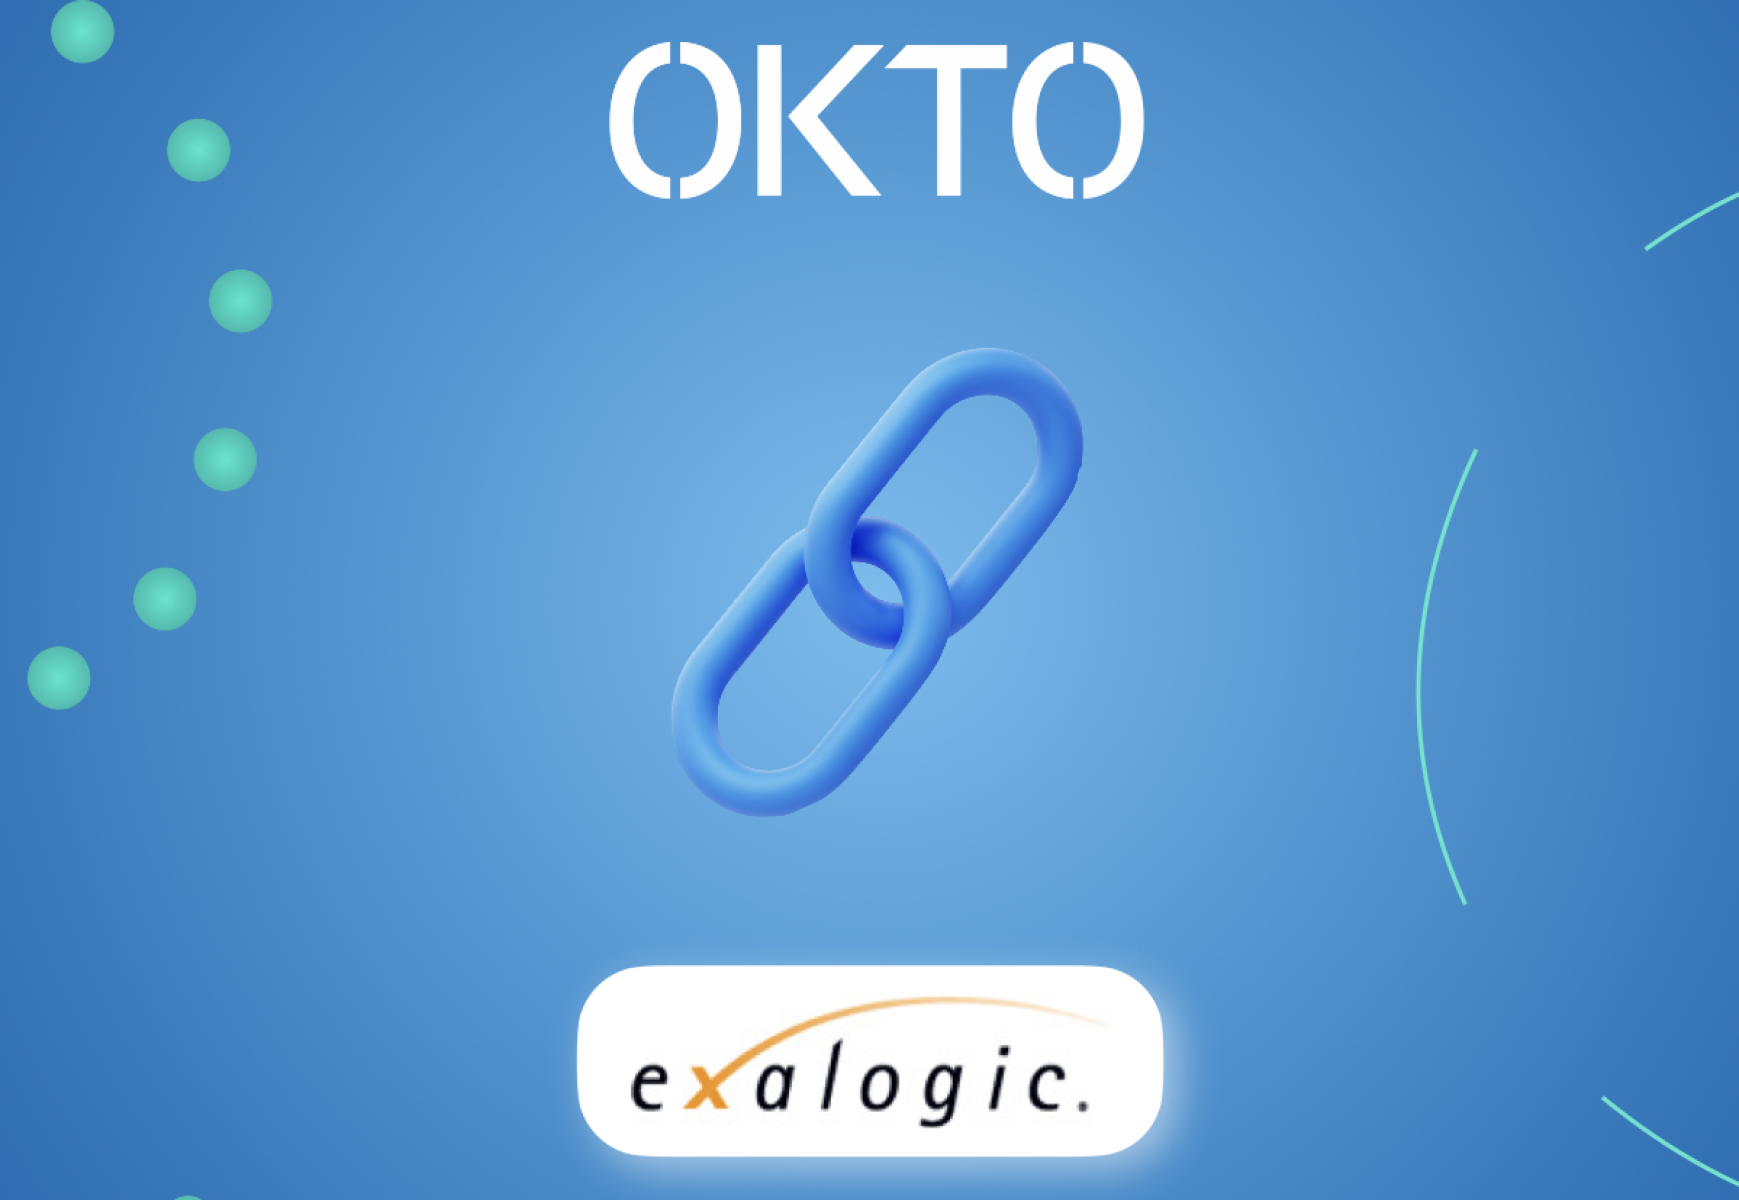 OKTO teams up with Exalogic to unleash the power of OKTO.PVR &#038; OKTO.CASH